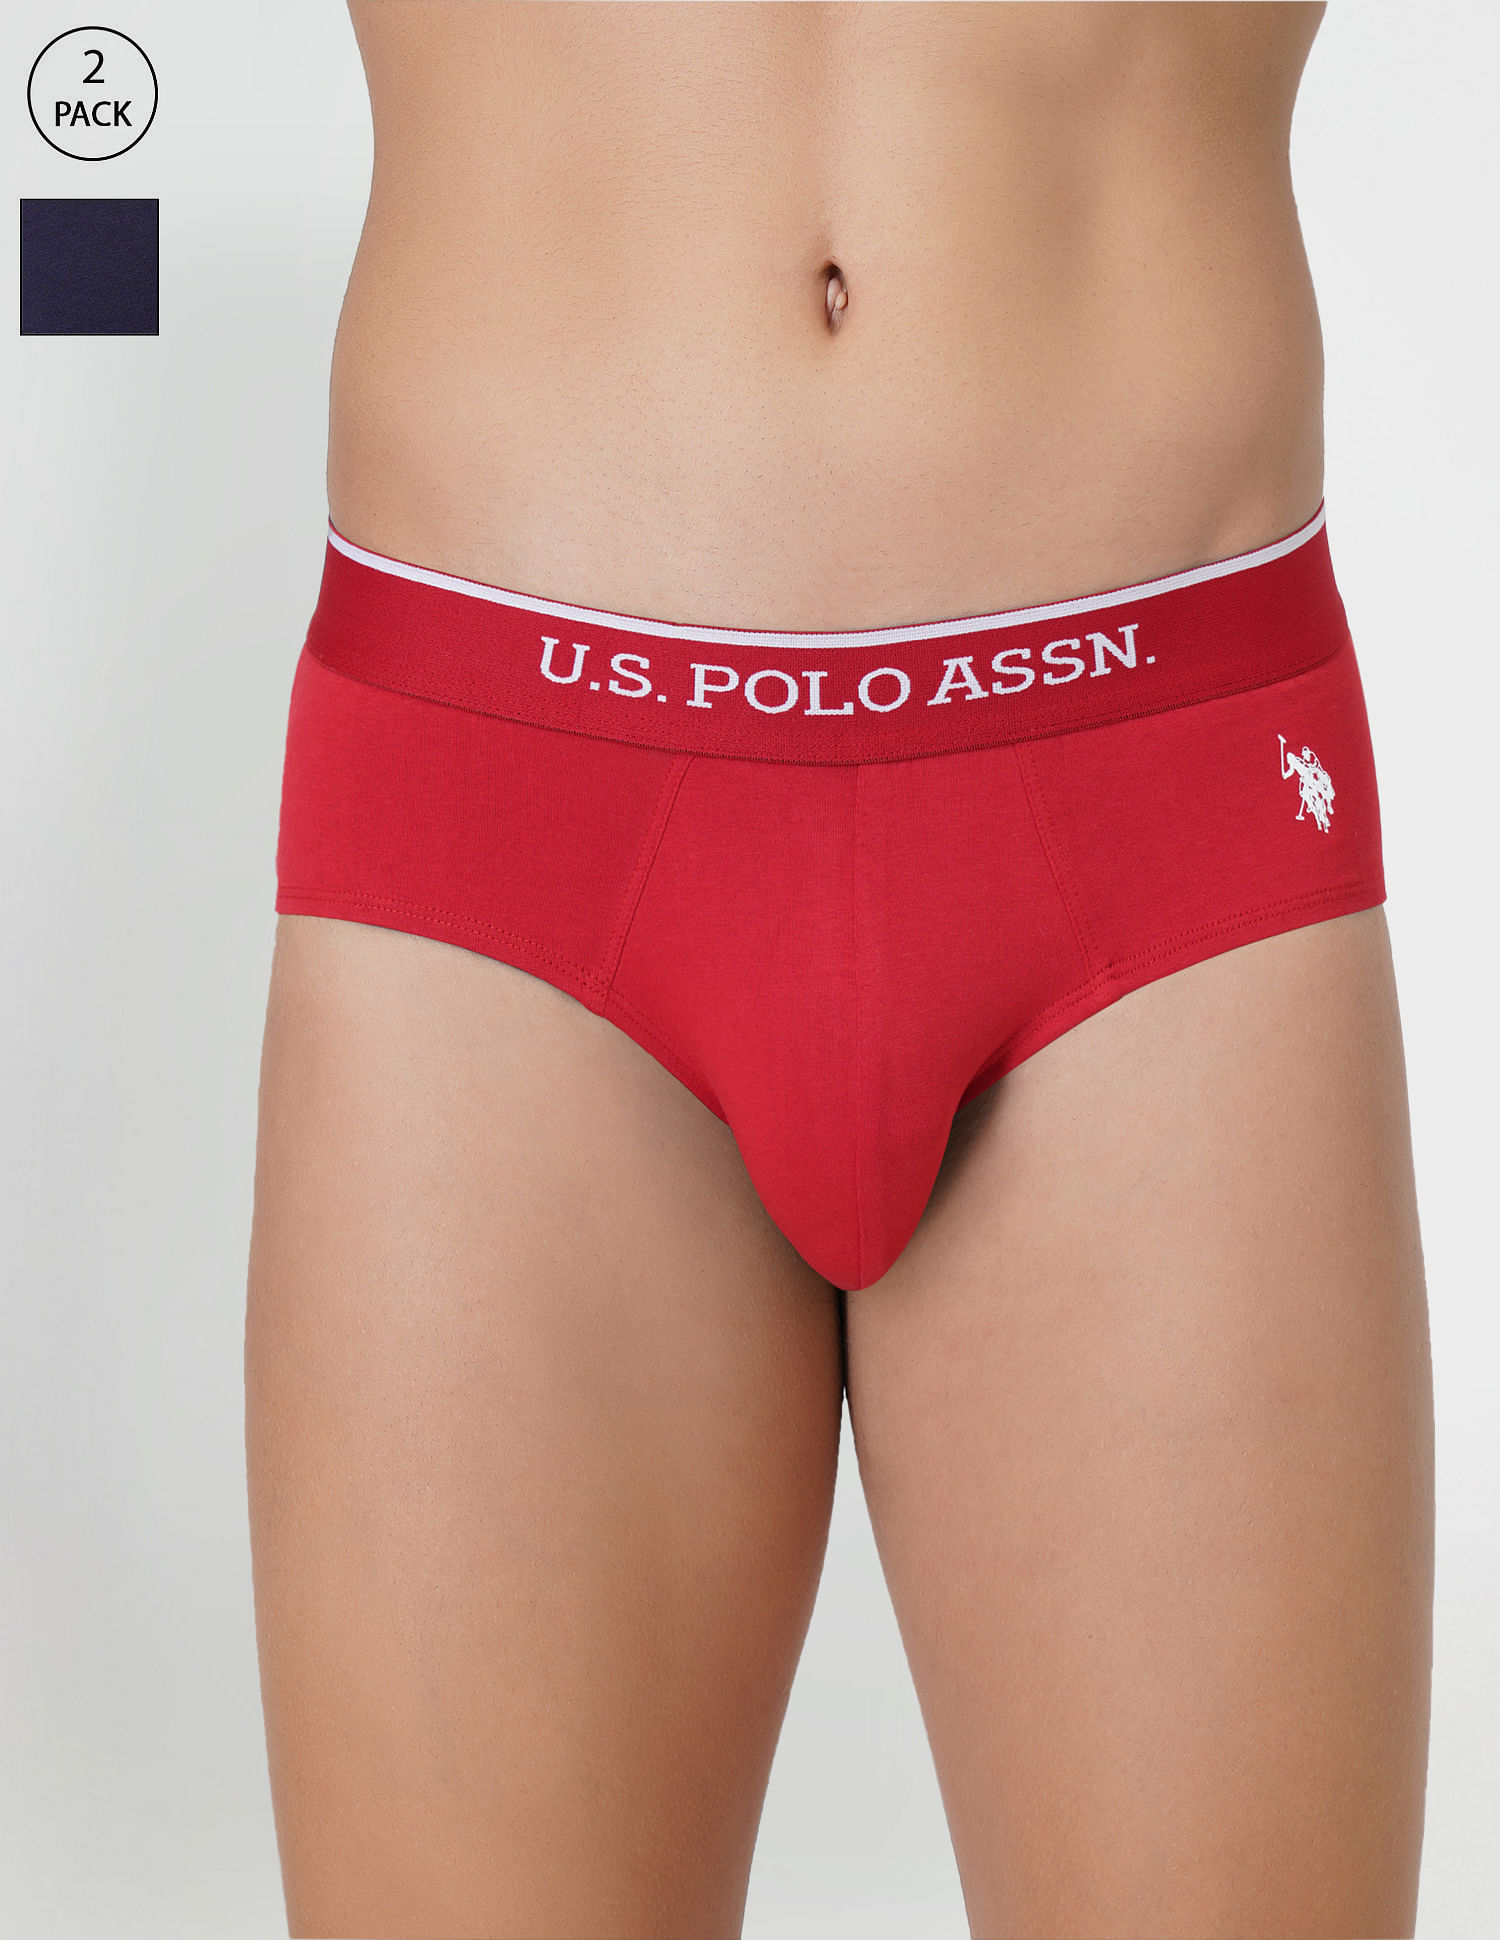 U.s Polo Assn Underwear - Buy U.s Polo Assn Underwear online in India